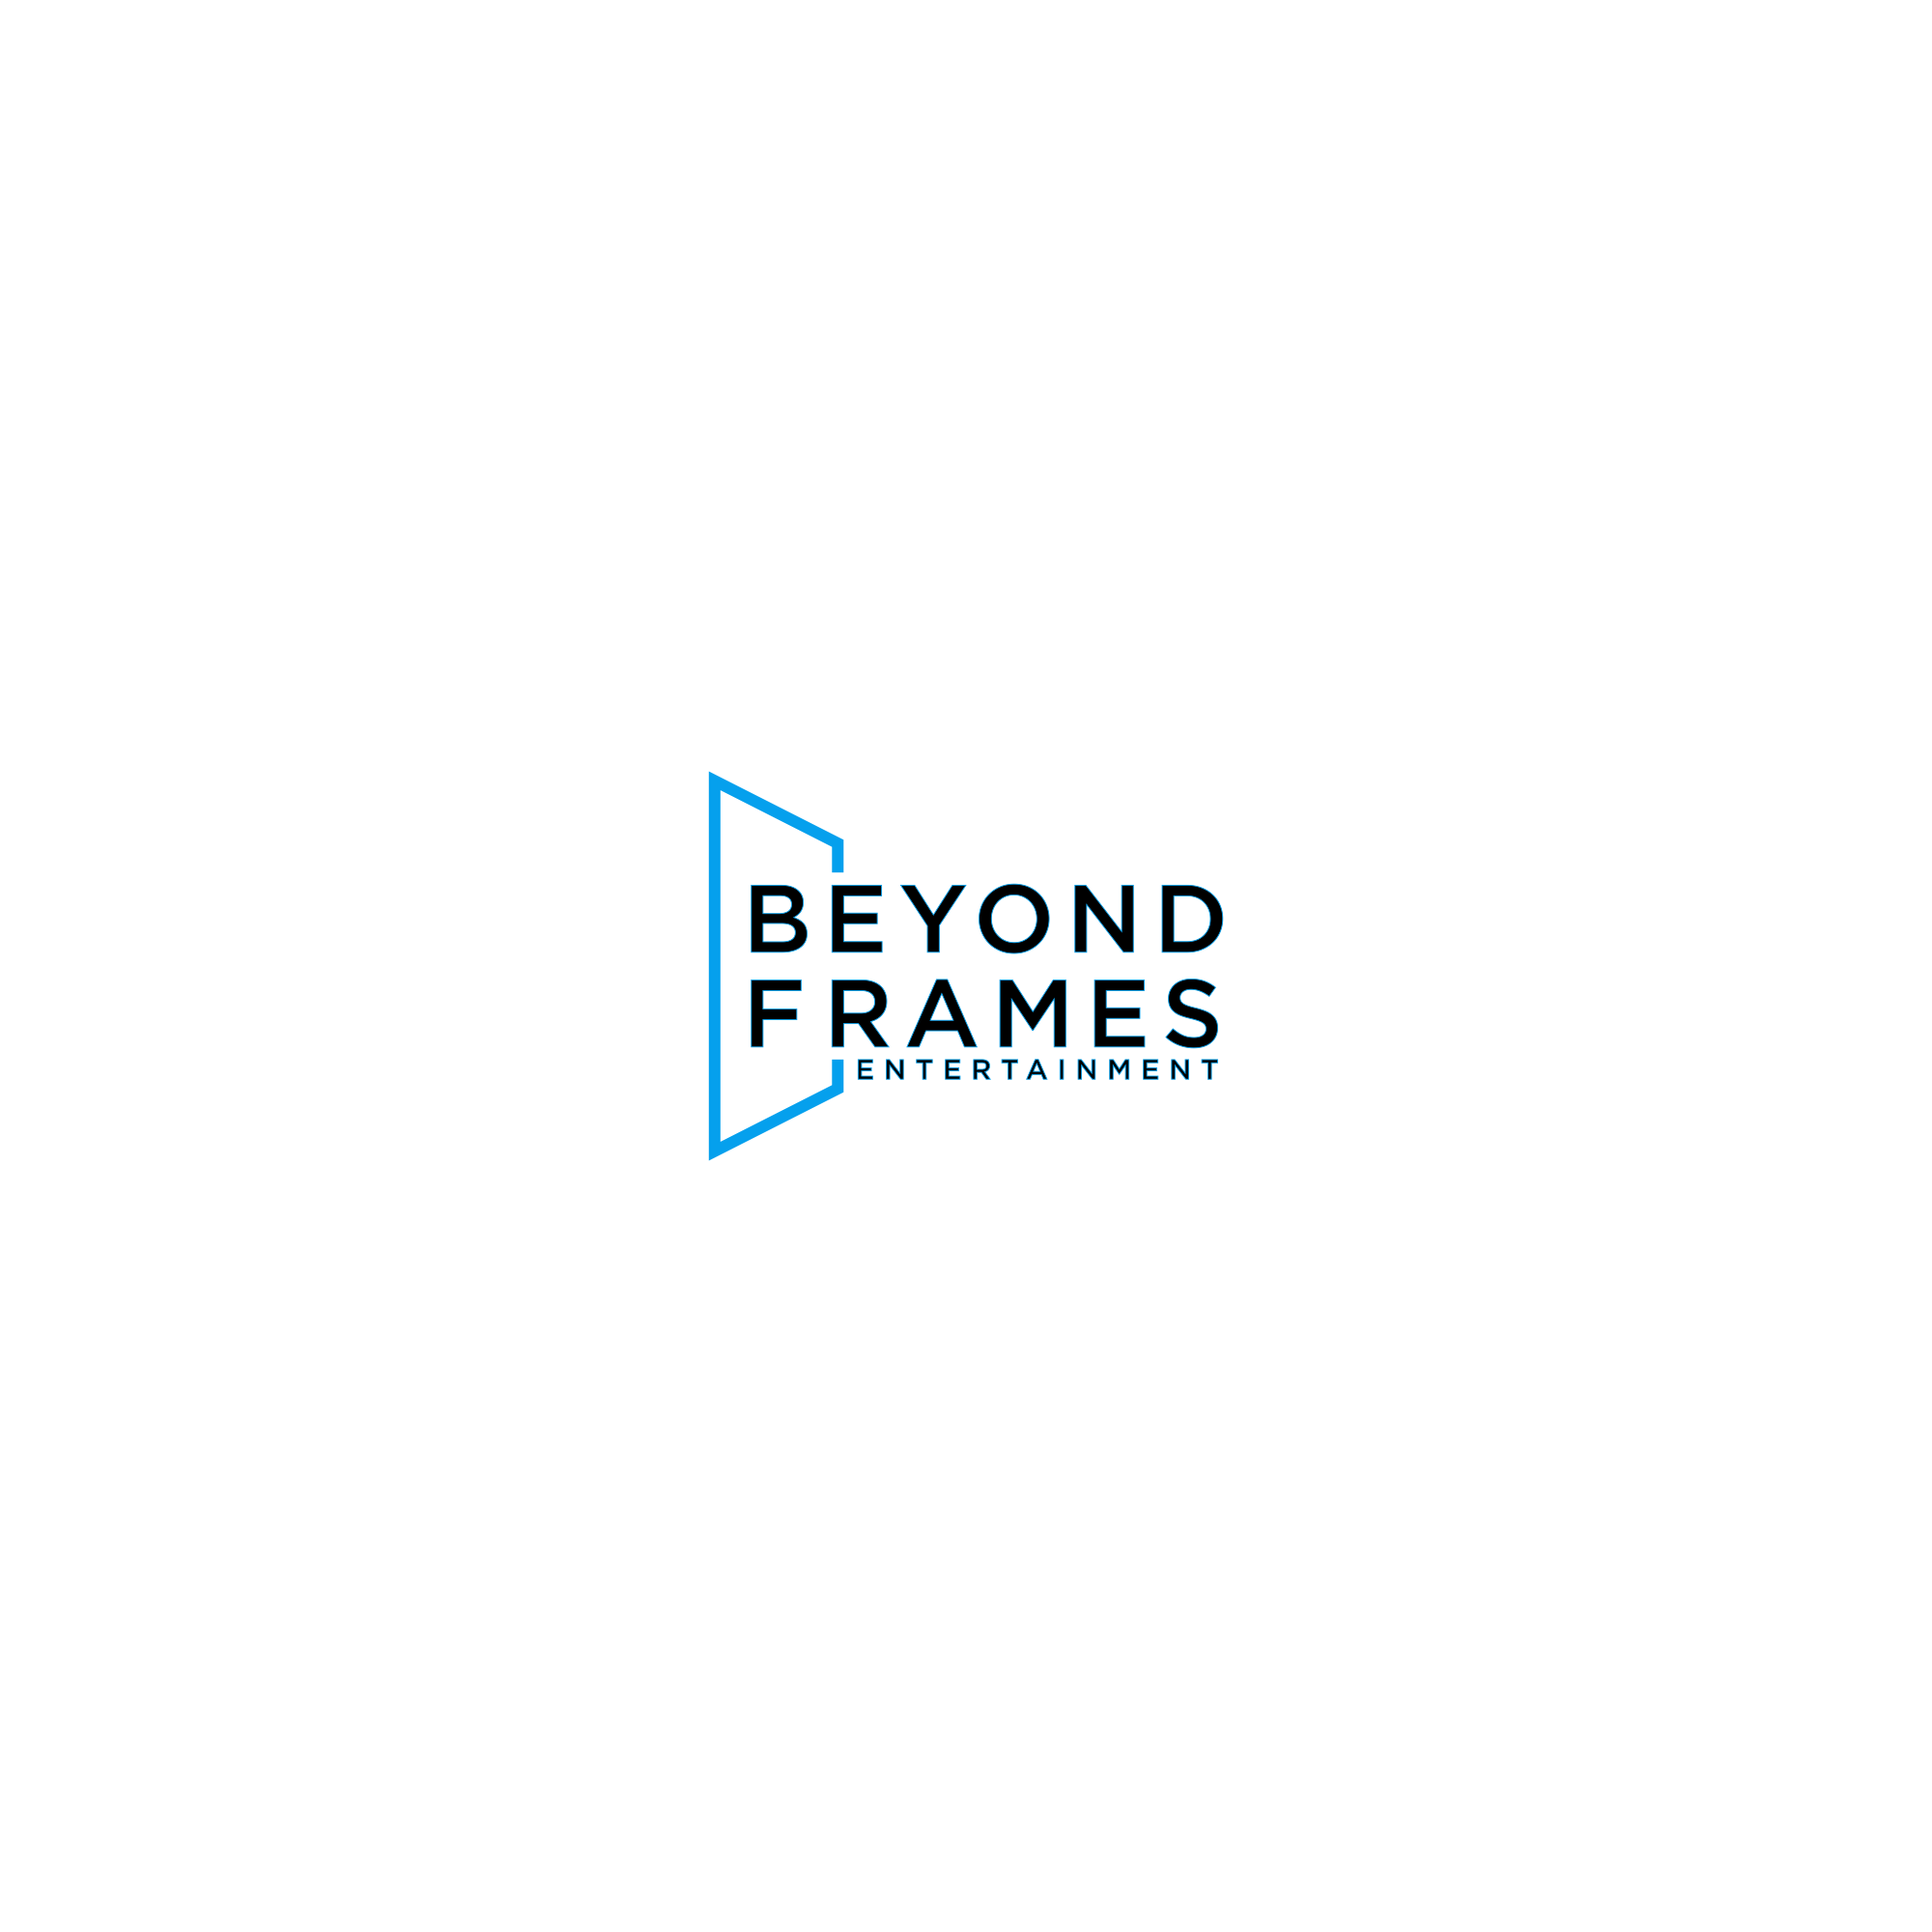 Beyond Frames Entertainment AB Logotyp